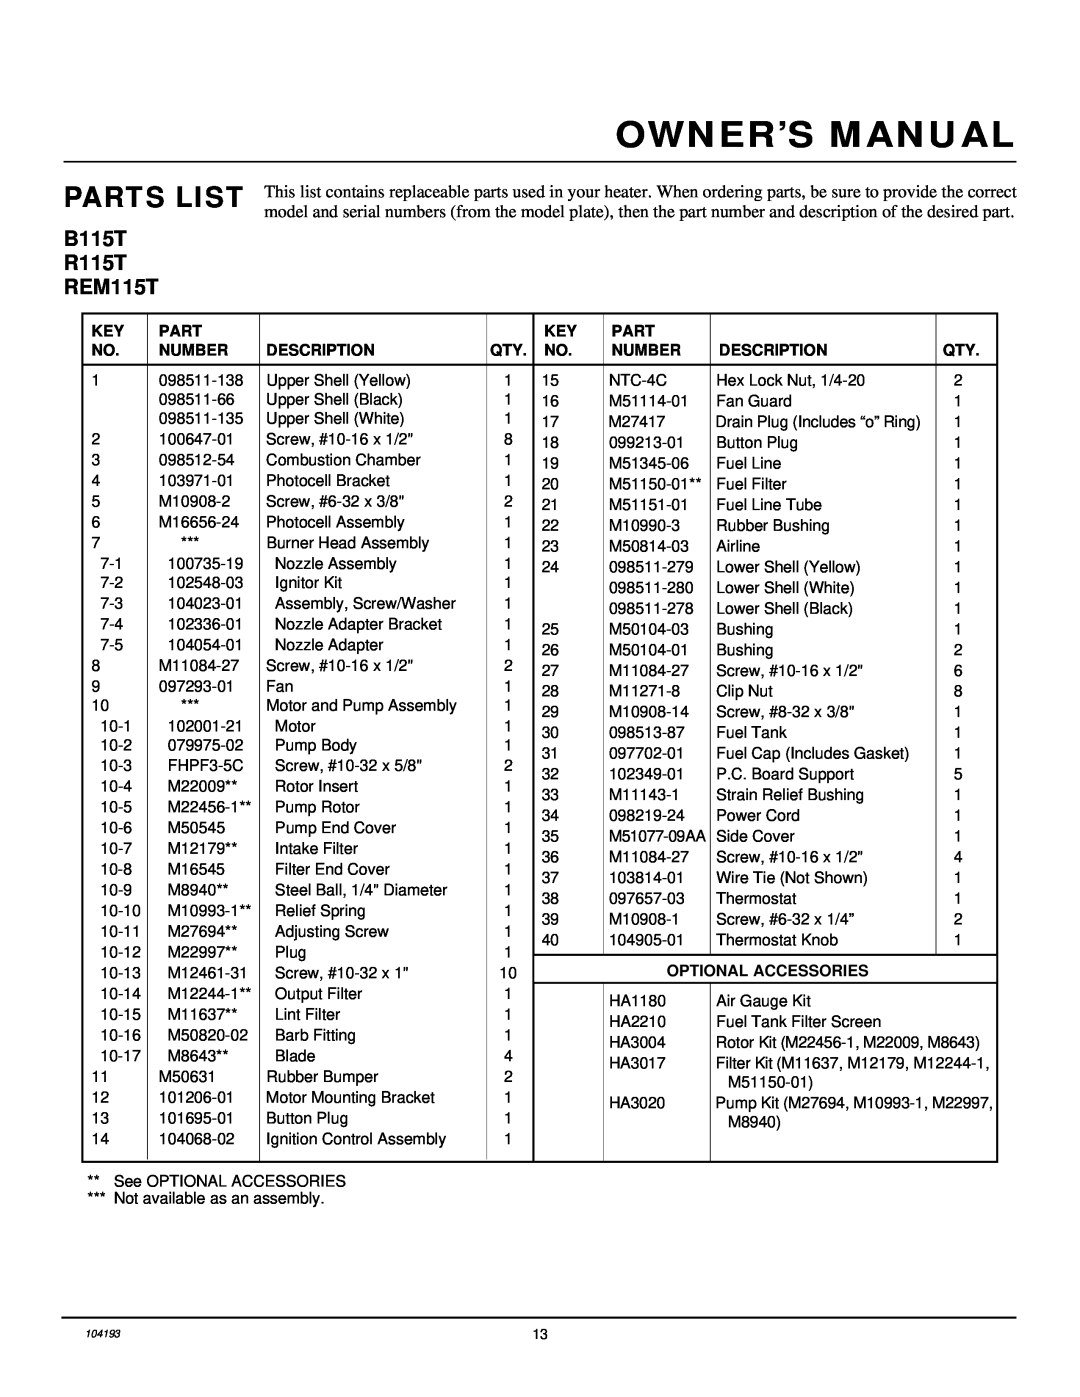 Desa owner manual Parts List, B115T R115T REM115T, Number, Description, Optional Accessories 